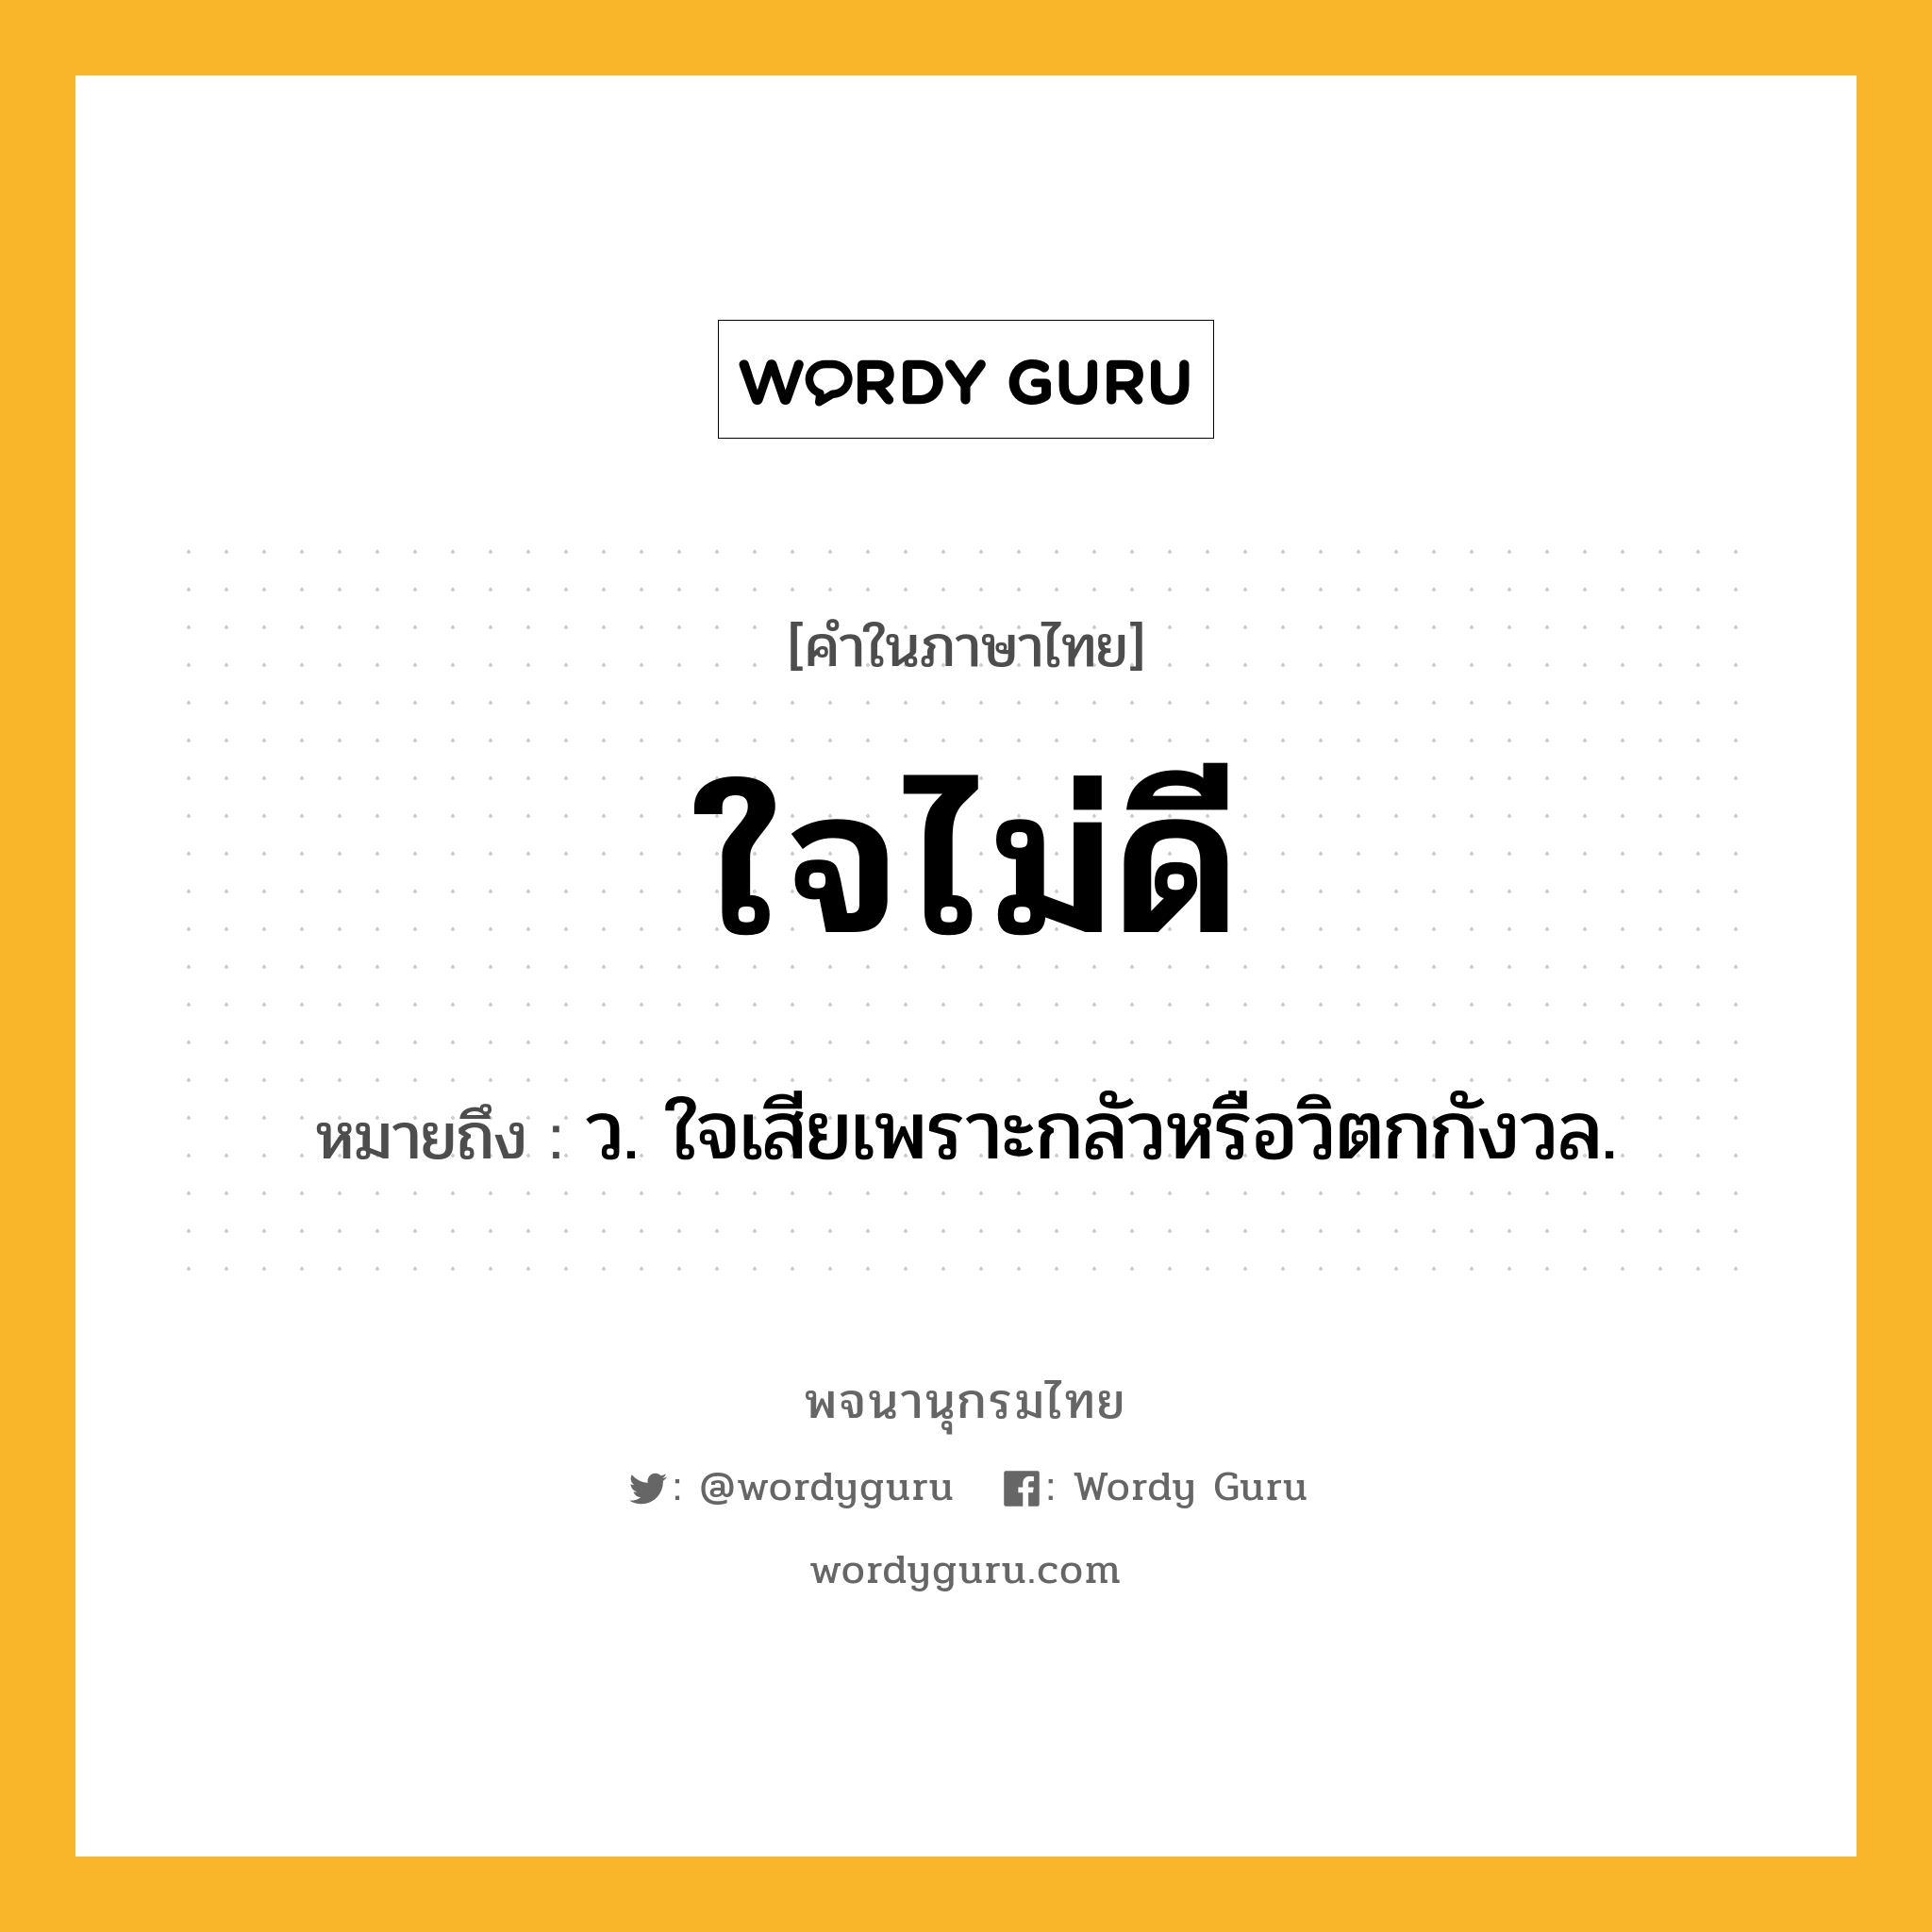 ใจไม่ดี หมายถึงอะไร?, คำในภาษาไทย ใจไม่ดี หมายถึง ว. ใจเสียเพราะกลัวหรือวิตกกังวล.